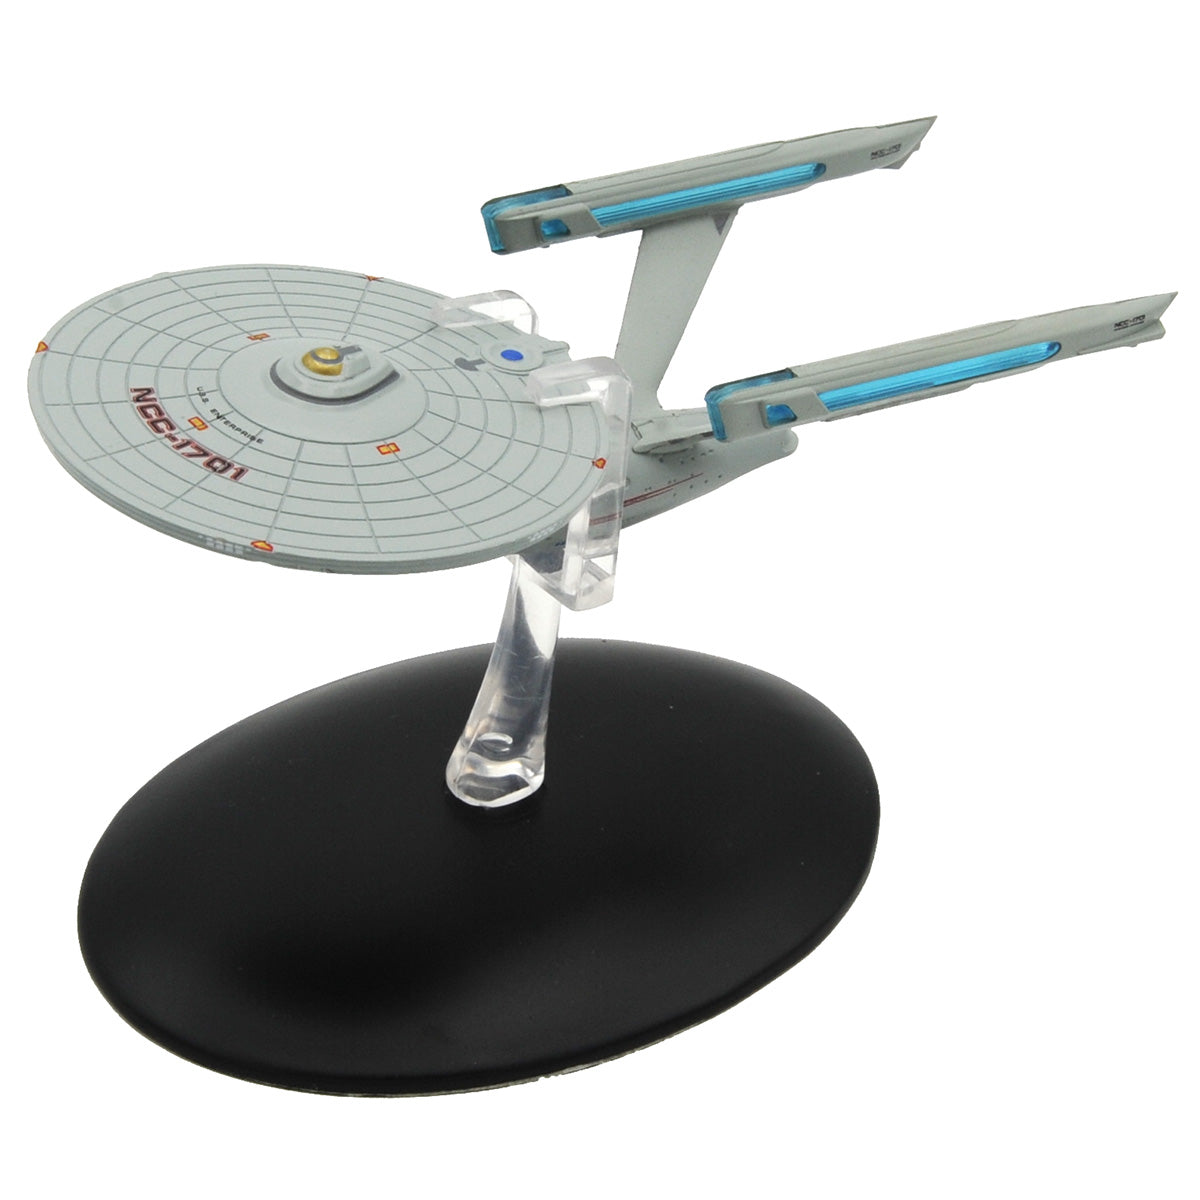 #02 U.S.S. Enterprise NCC-1701 refit (Constitution class) TMP Model Die Cast Ship (Eaglemoss / Star Trek)